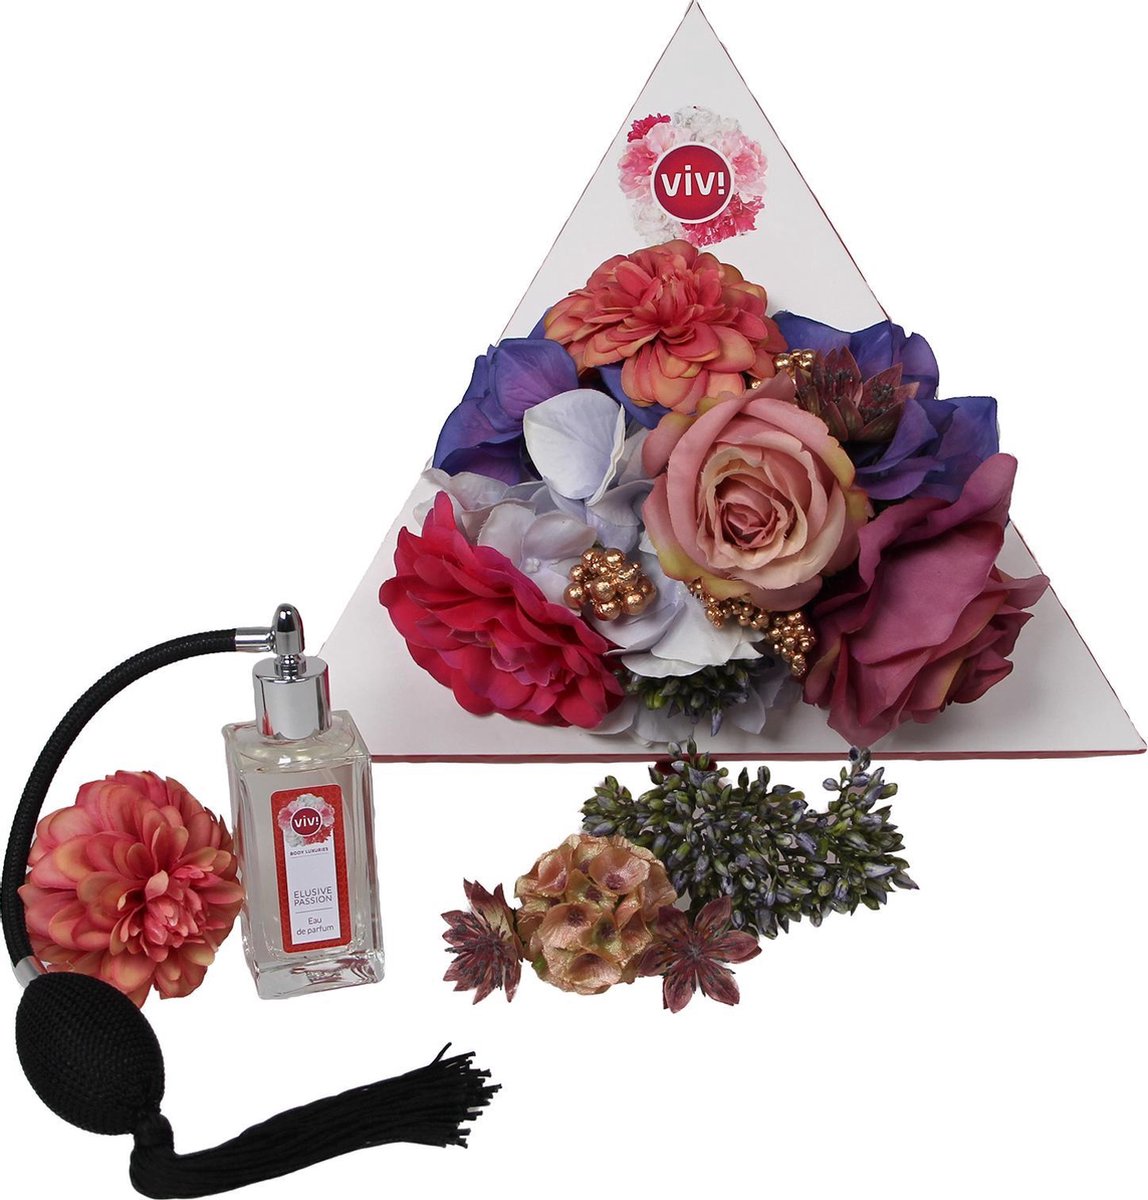 Viv! Body Luxuries - Elusive Passion - eau de parfum - 50ml